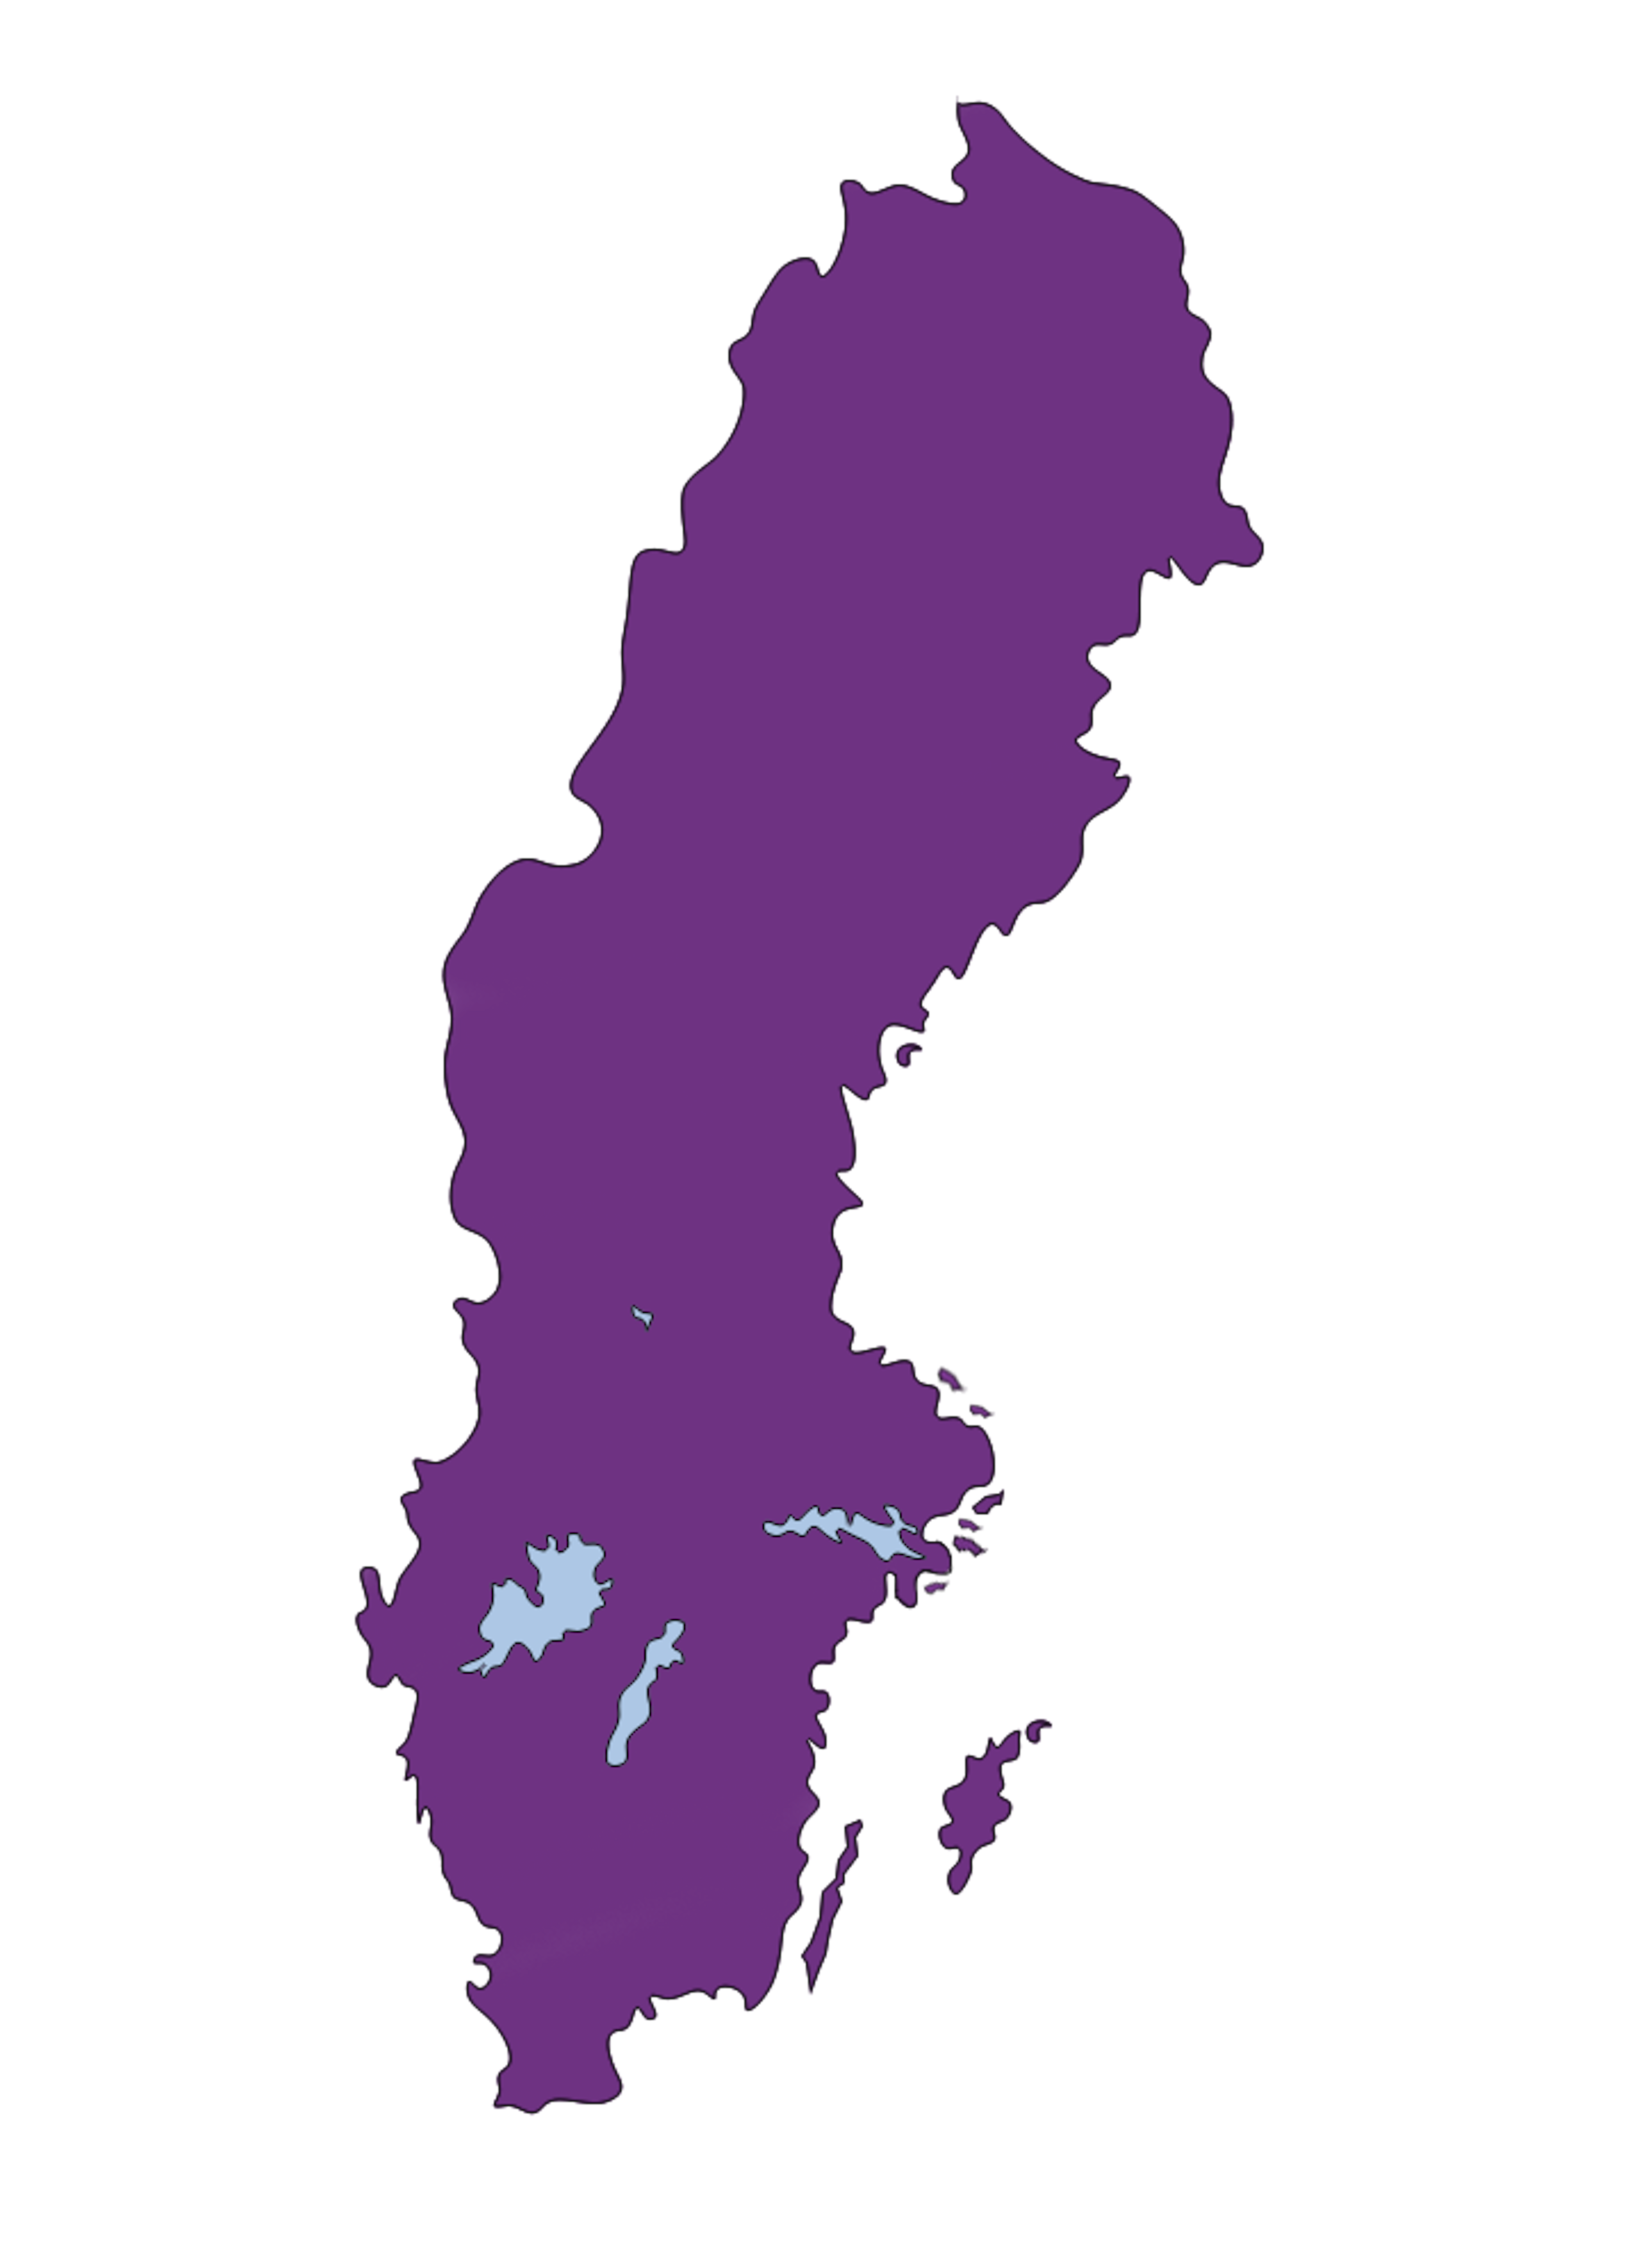 Illustrativ bild på en Sverige-karta i lila färg.